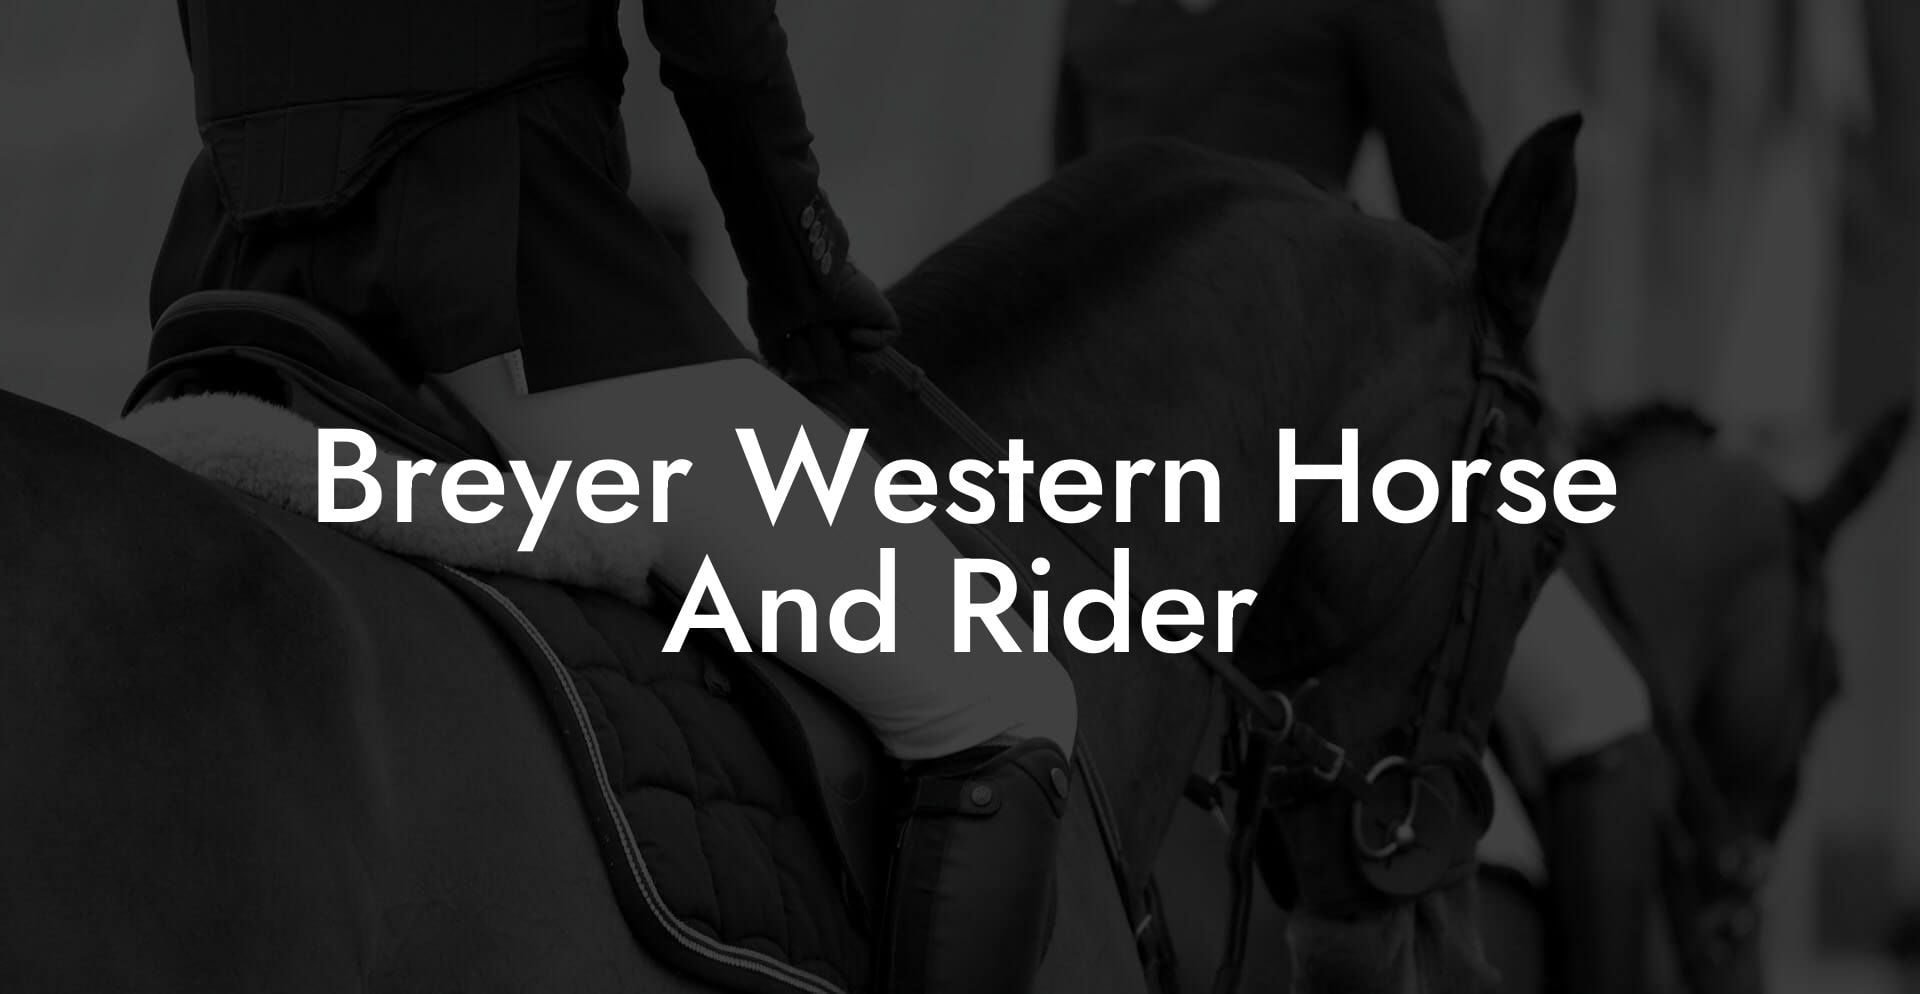 Breyer Western Horse And Rider